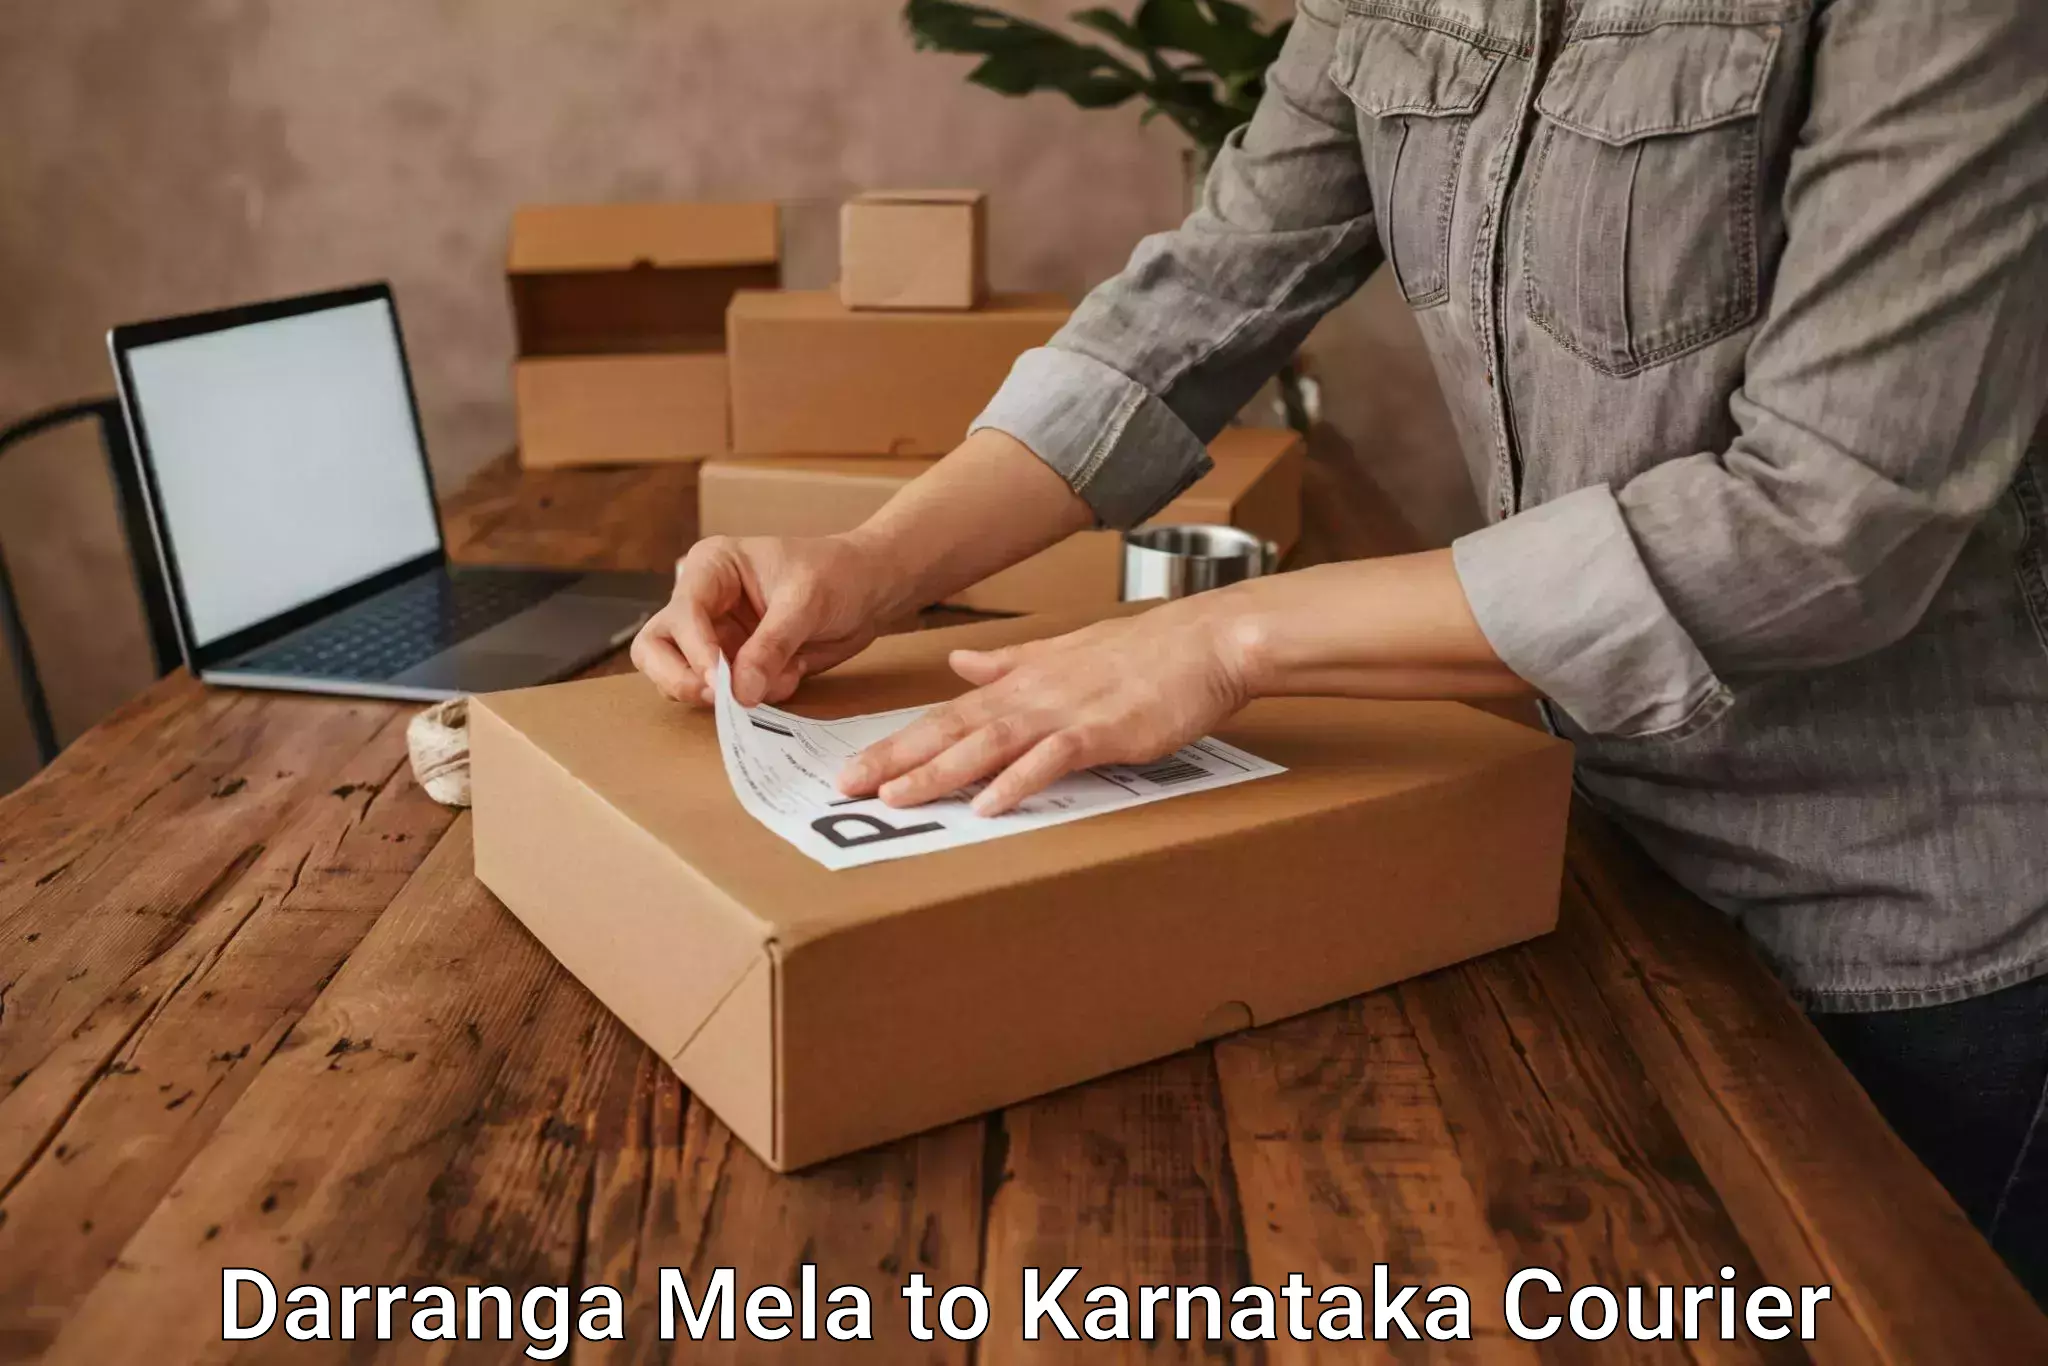 Cargo courier service Darranga Mela to Mannaekhelli